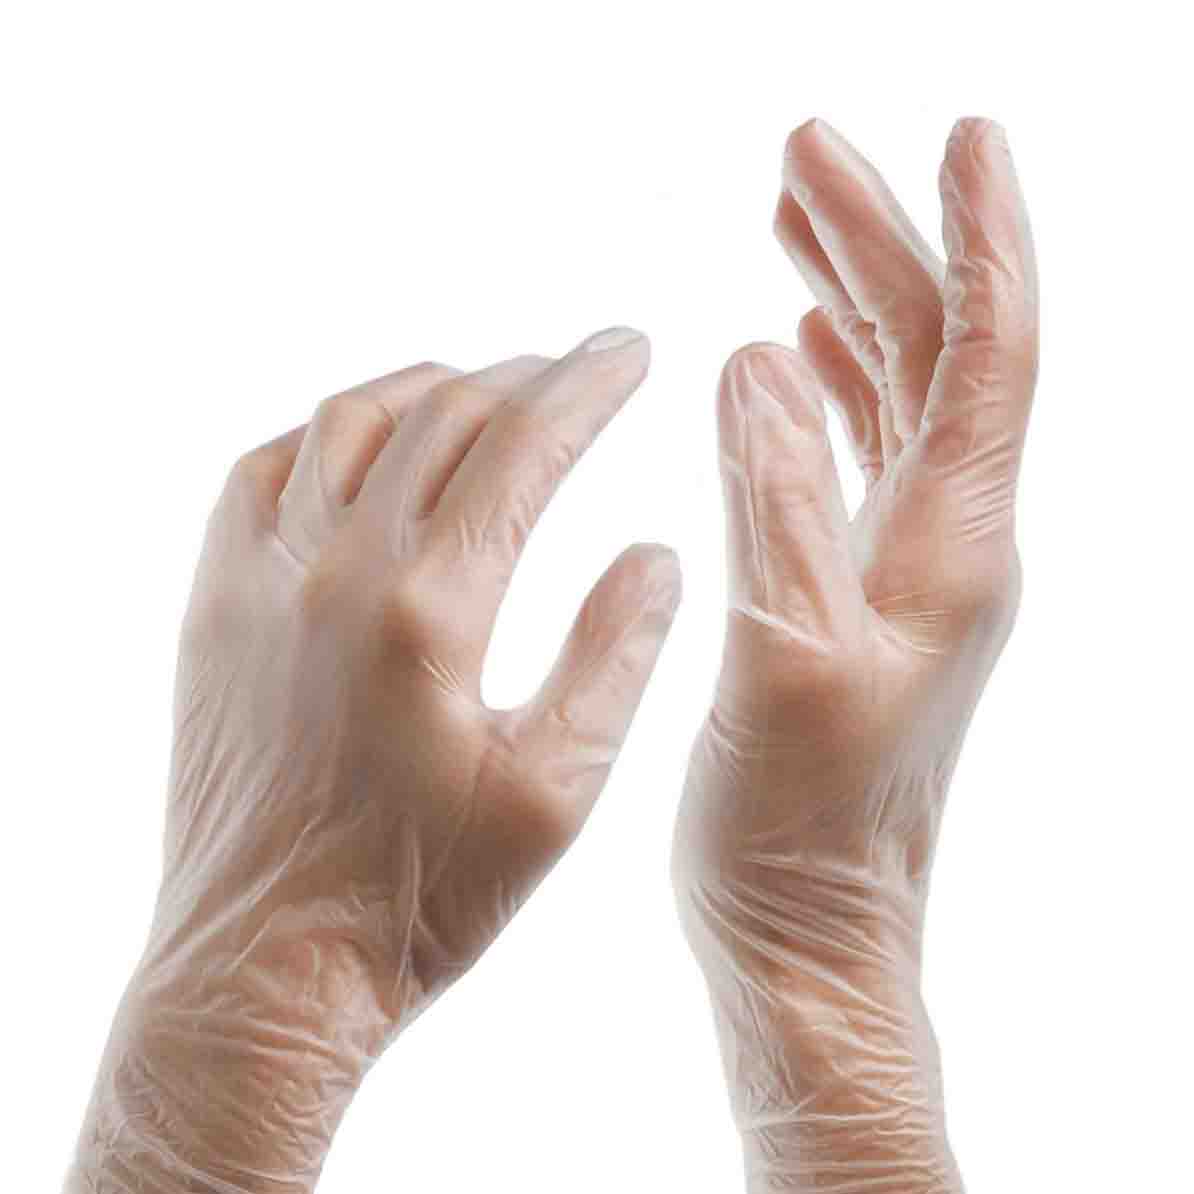 ویروس کرونا؛ هرکدام از دستکش‌ها چه کارایی دارند؟